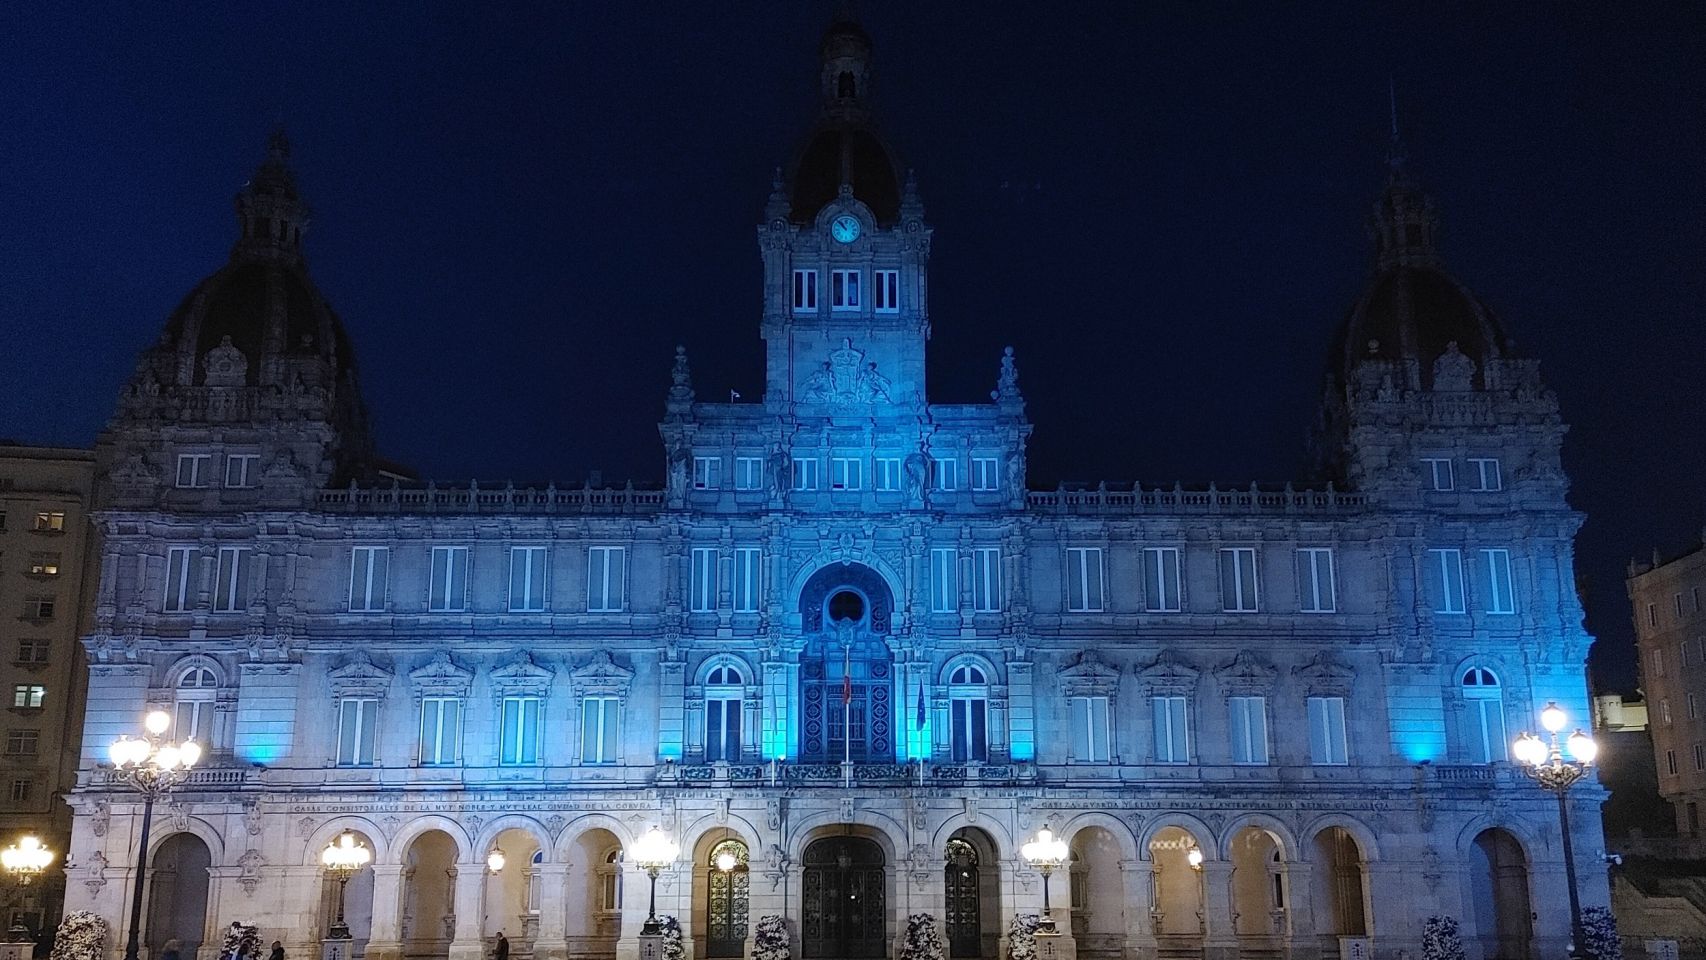 La fachada de María Pita iluminada de azul en apoyo al Deportivo.